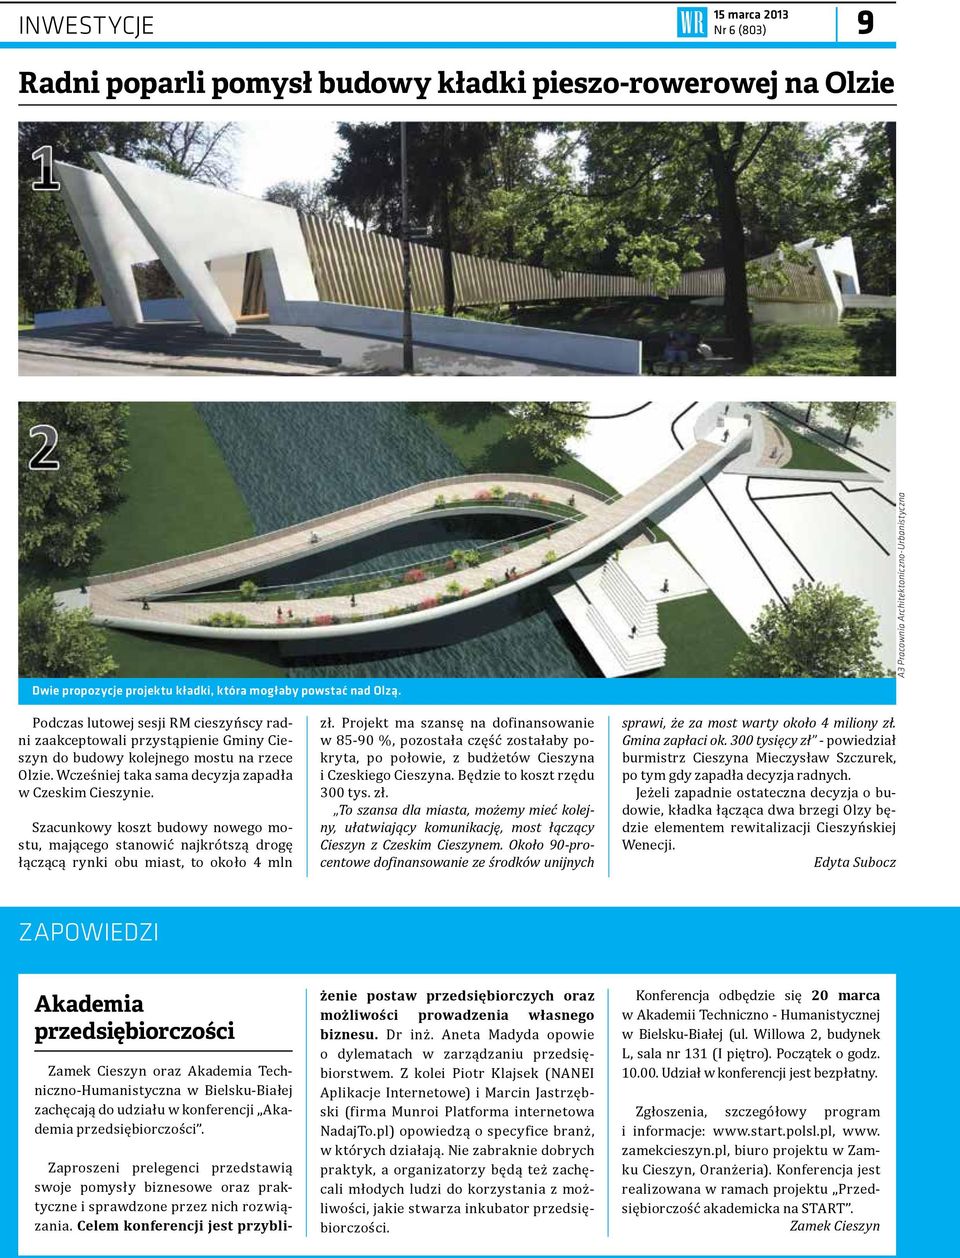 Wcześniej taka sama decyzja zapadła w Czeskim Cieszynie. Szacunkowy koszt budowy nowego mostu, mającego stanowić najkrótszą drogę łączącą rynki obu miast, to około 4 mln zł.